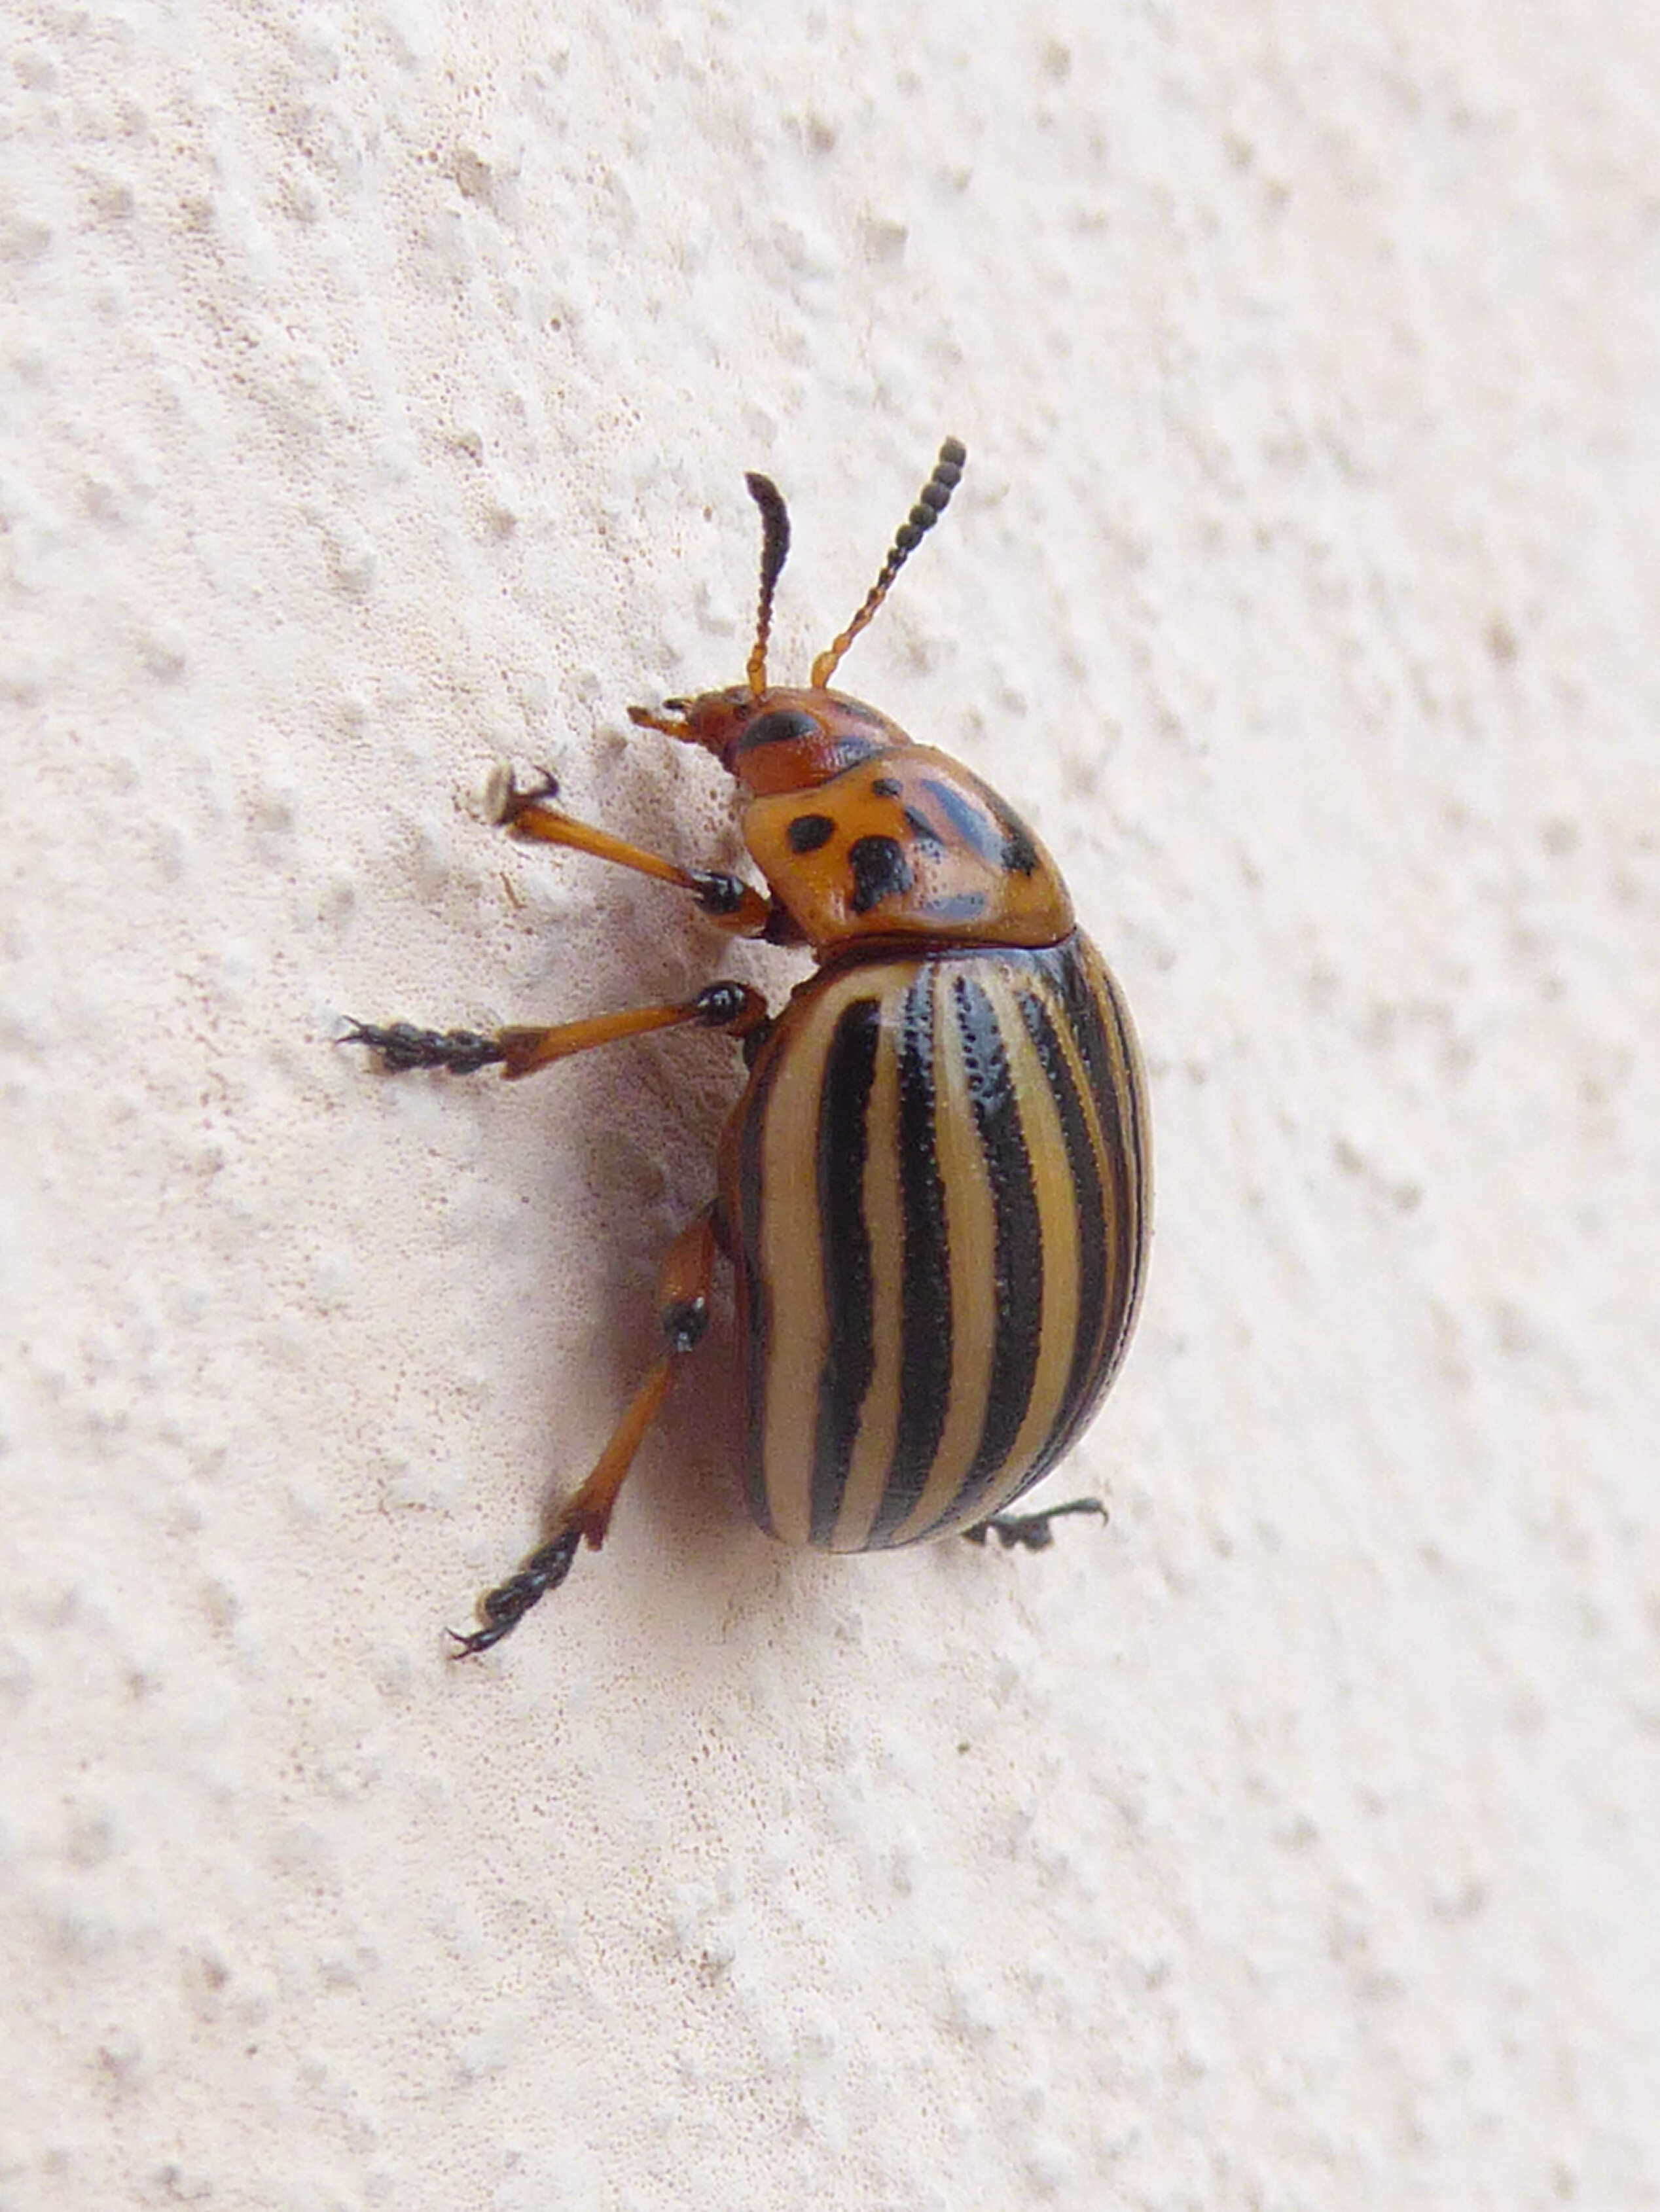 Image of Colorado potato beetle